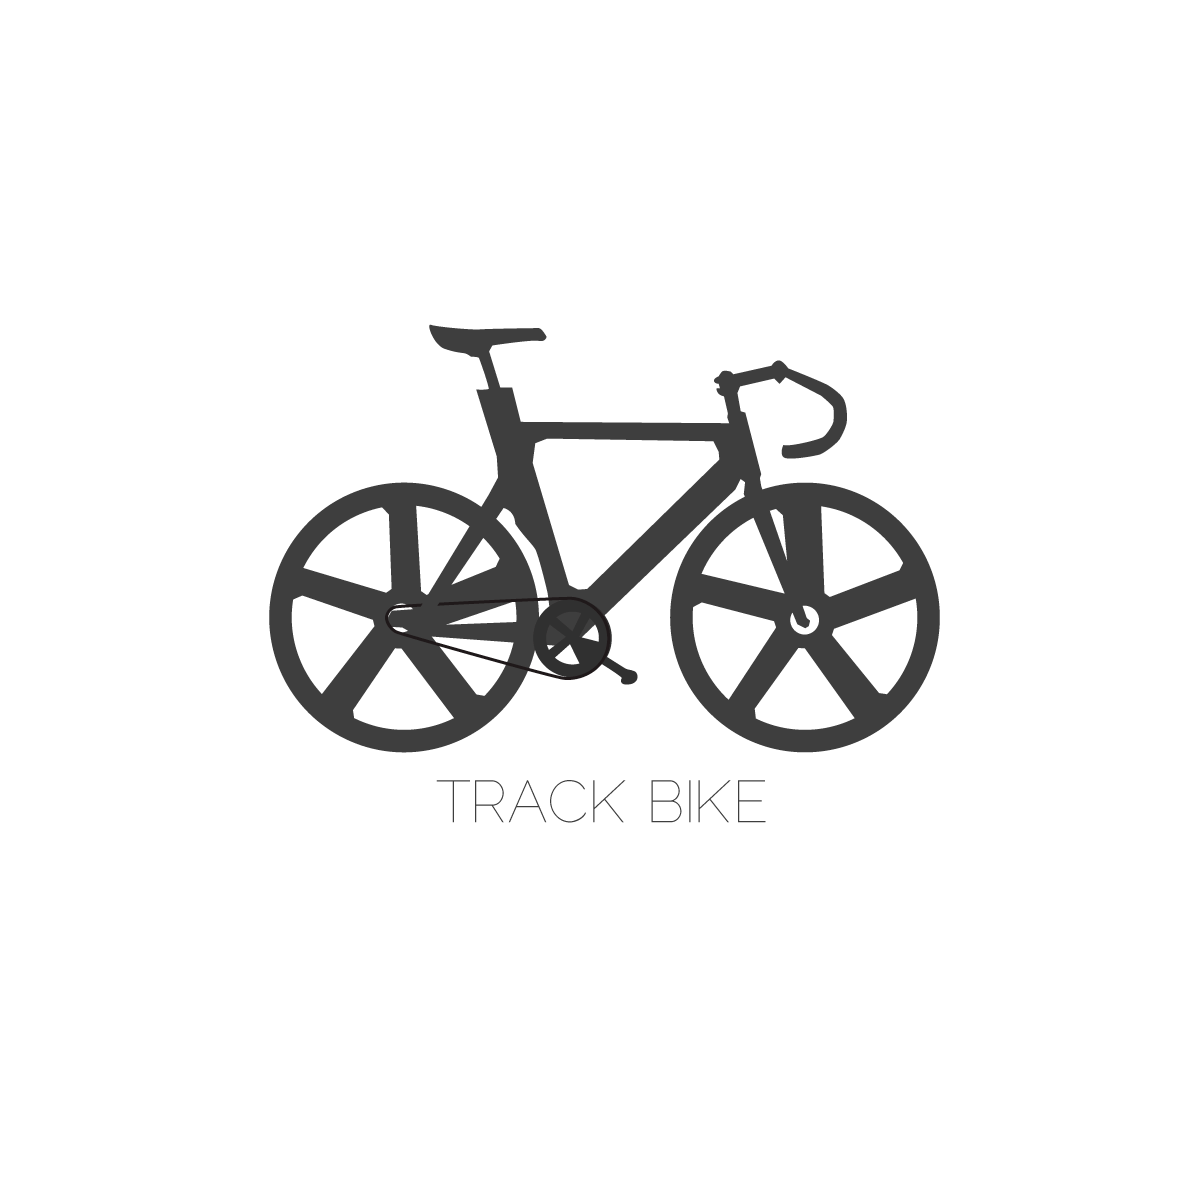 Vector Illustration of a track bike